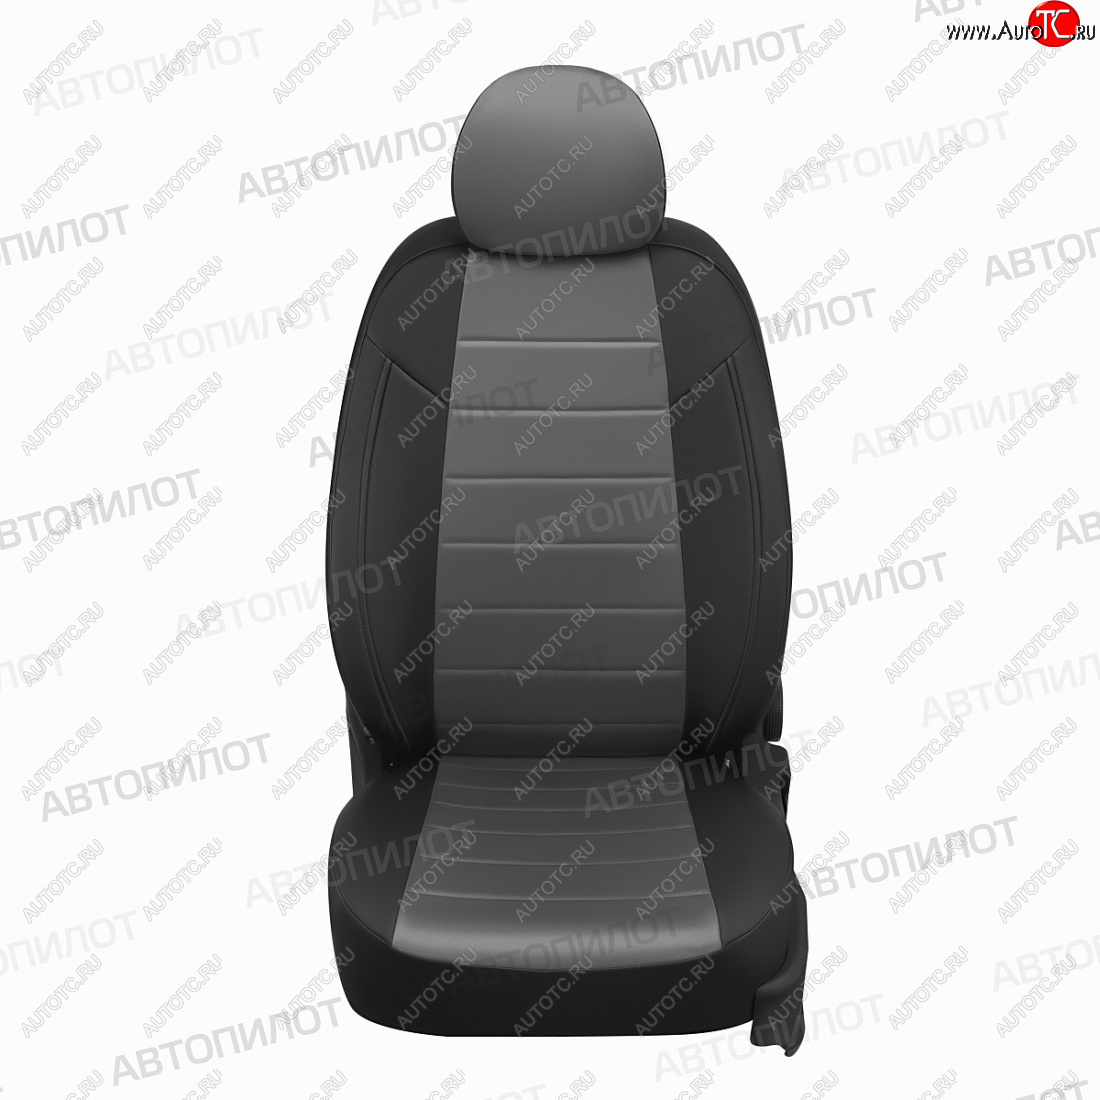 7 249 р. Чехлы сидений (экокожа/алькантара, 60/40) Автопилот  Hyundai Accent  седан ТагАЗ (2001-2012) (черный/серый)